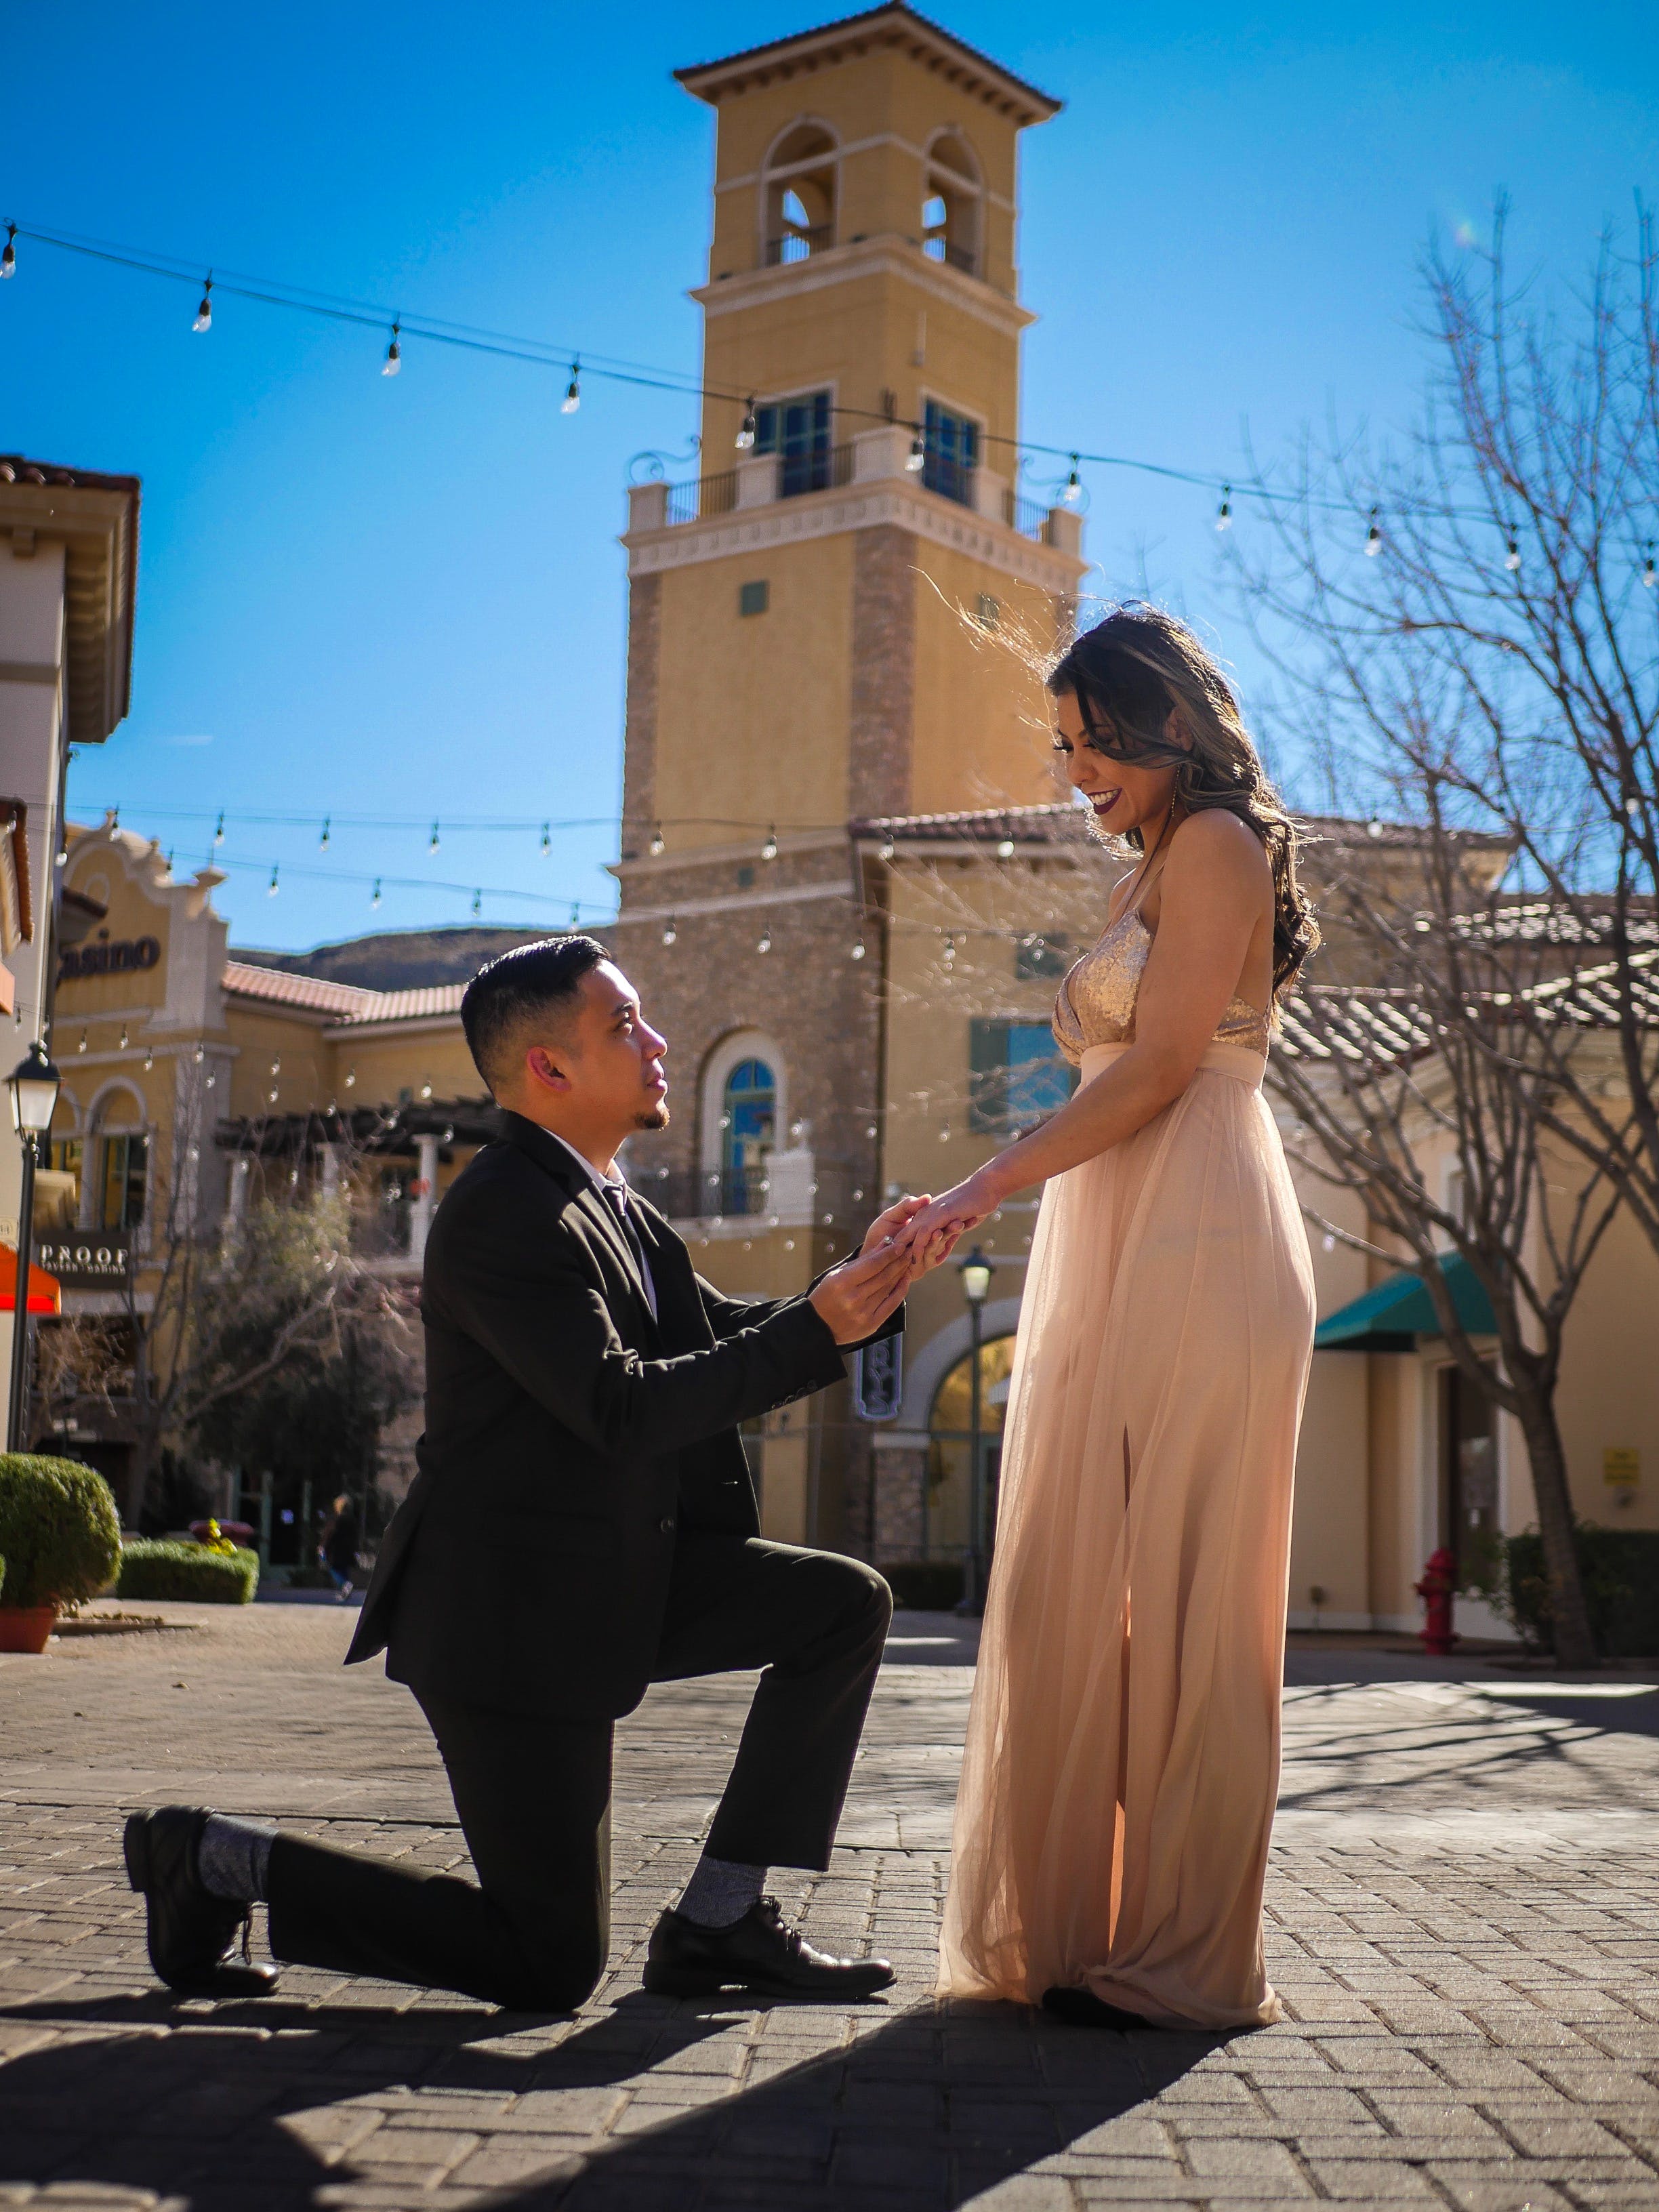 Un homme demande sa petite amie en mariage à genoux | Source : Pexels